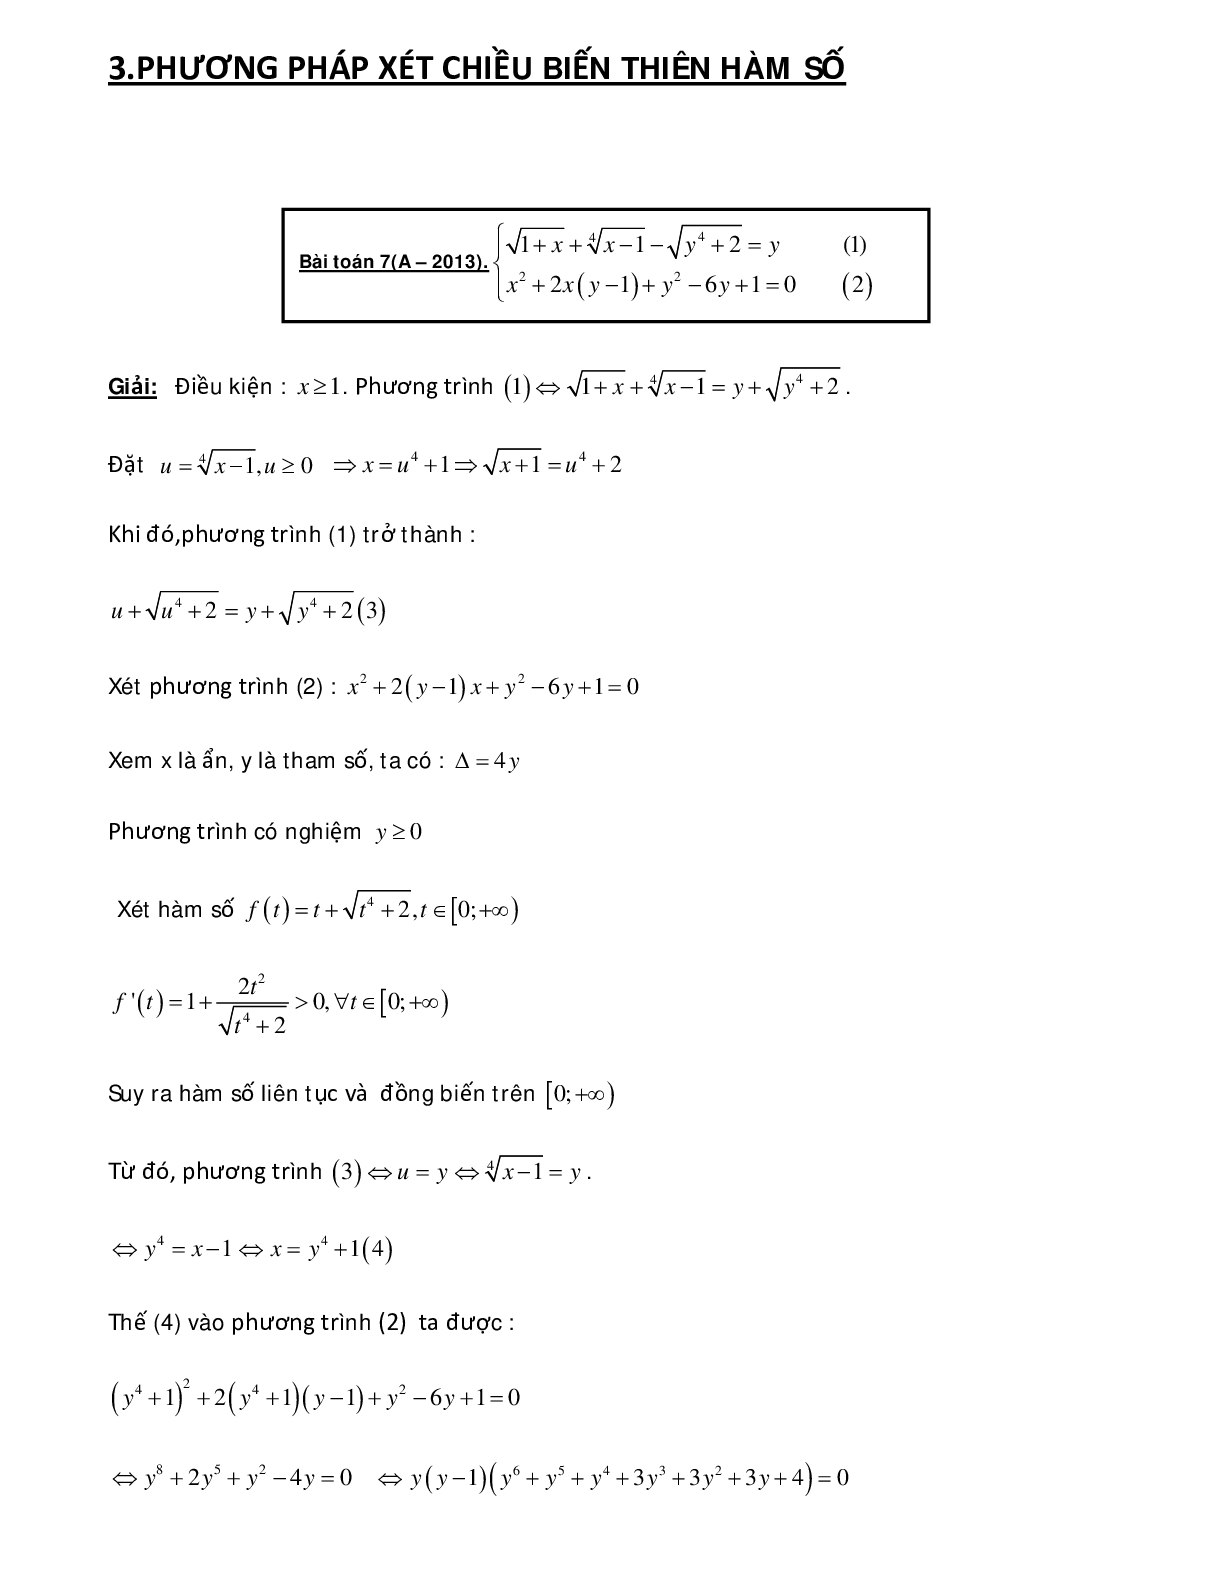 Bài tập sử dụng phương pháp hàm số để giải hệ phương trình - có đáp án chi tiết (trang 1)